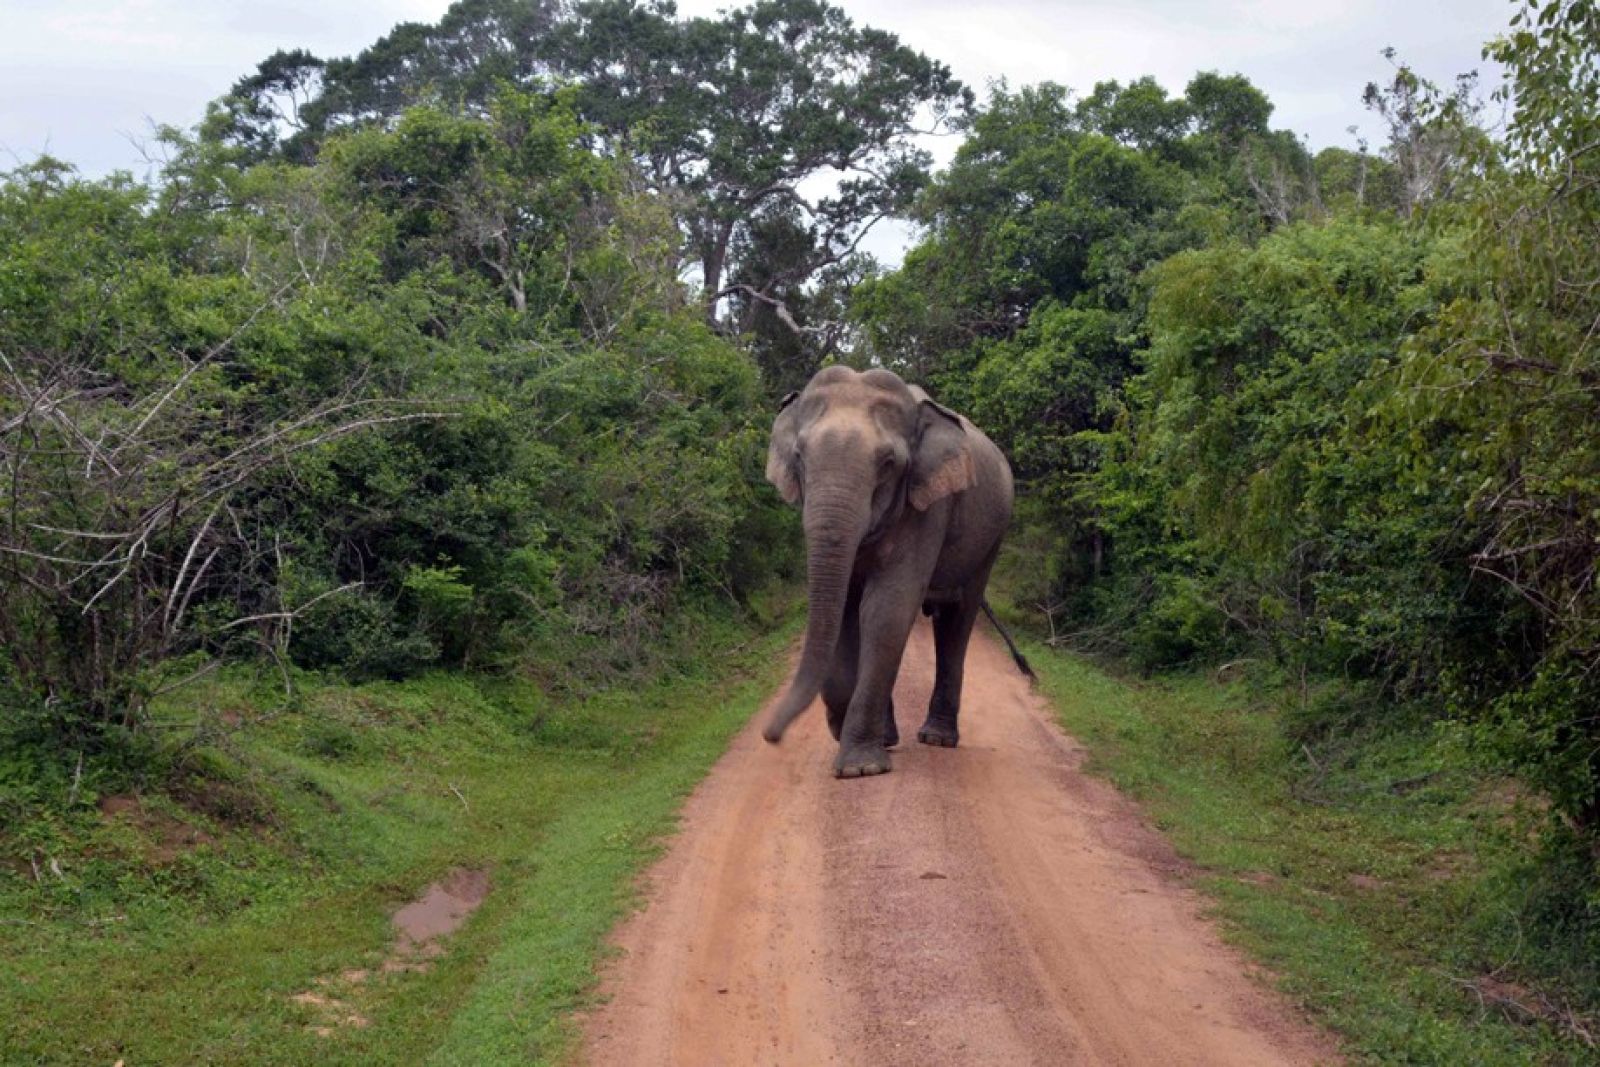 Elefant vor der Linse